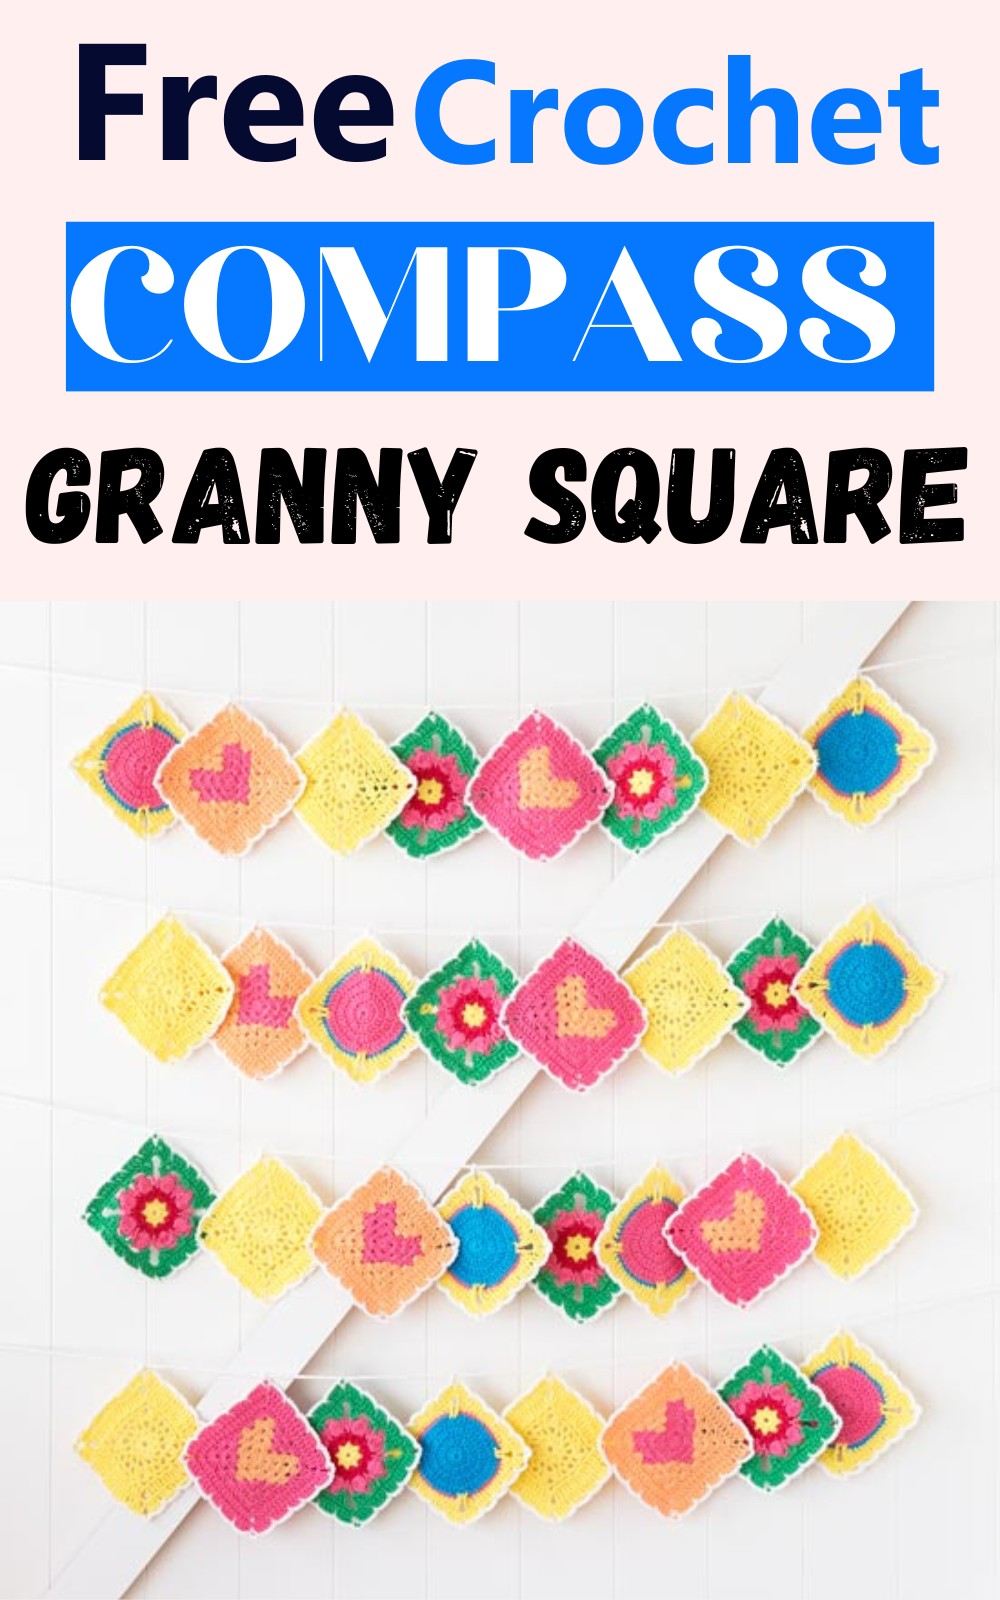 The Compass Granny Square